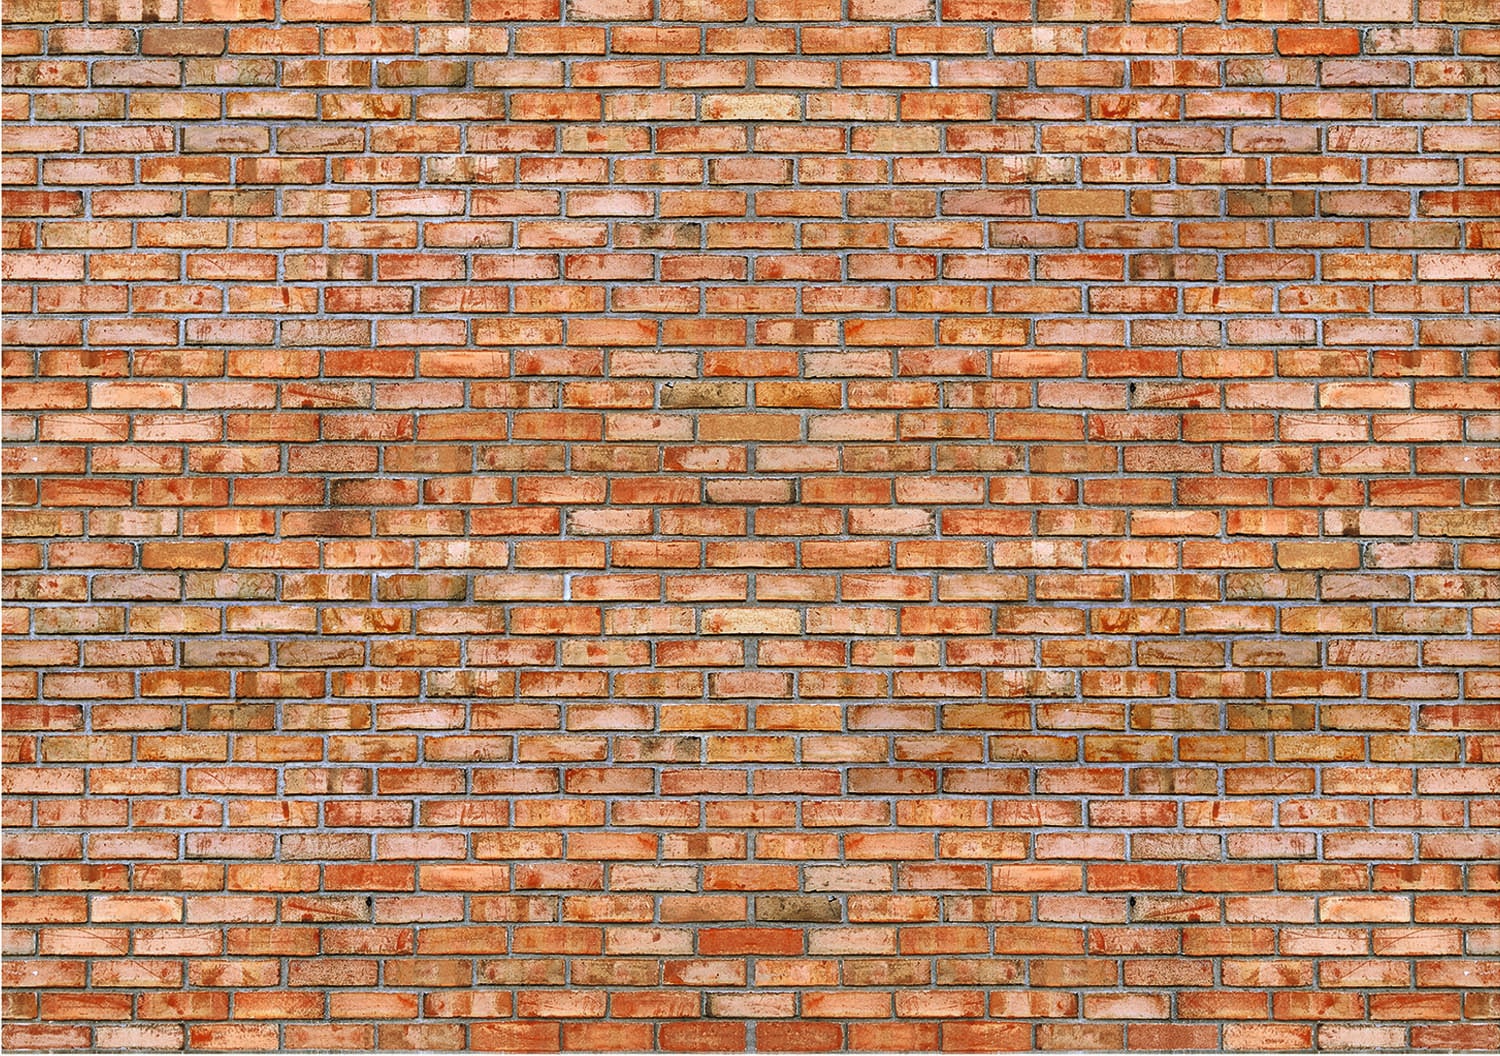 Papermoon Fototapete »Brickwall« von Papermoon